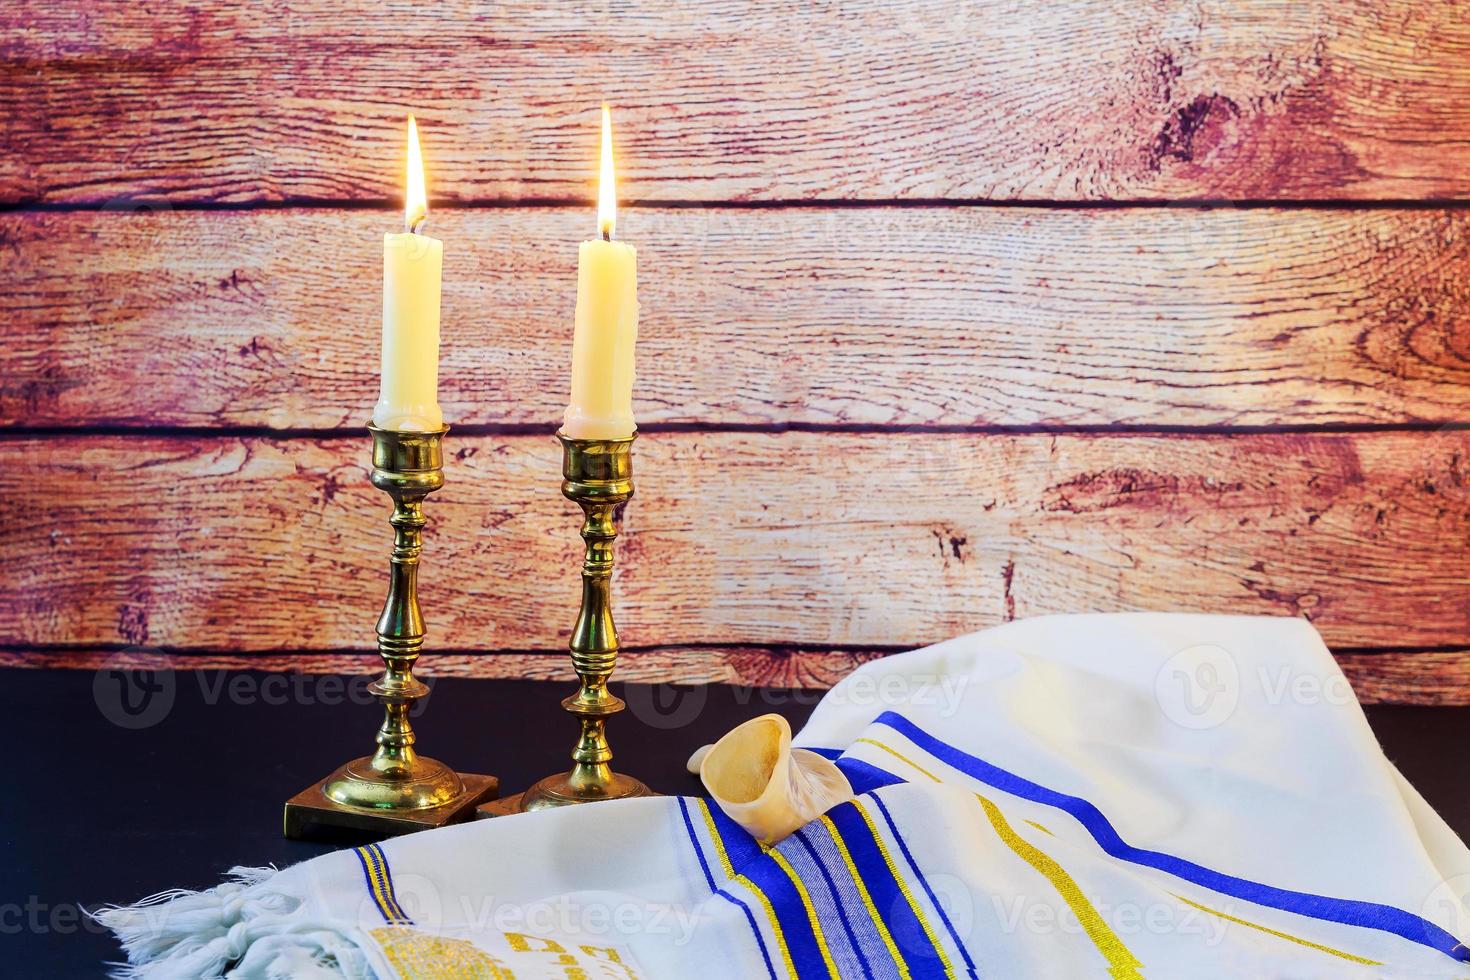 imagem do sábado. pão challah e candelas na mesa de madeira foto